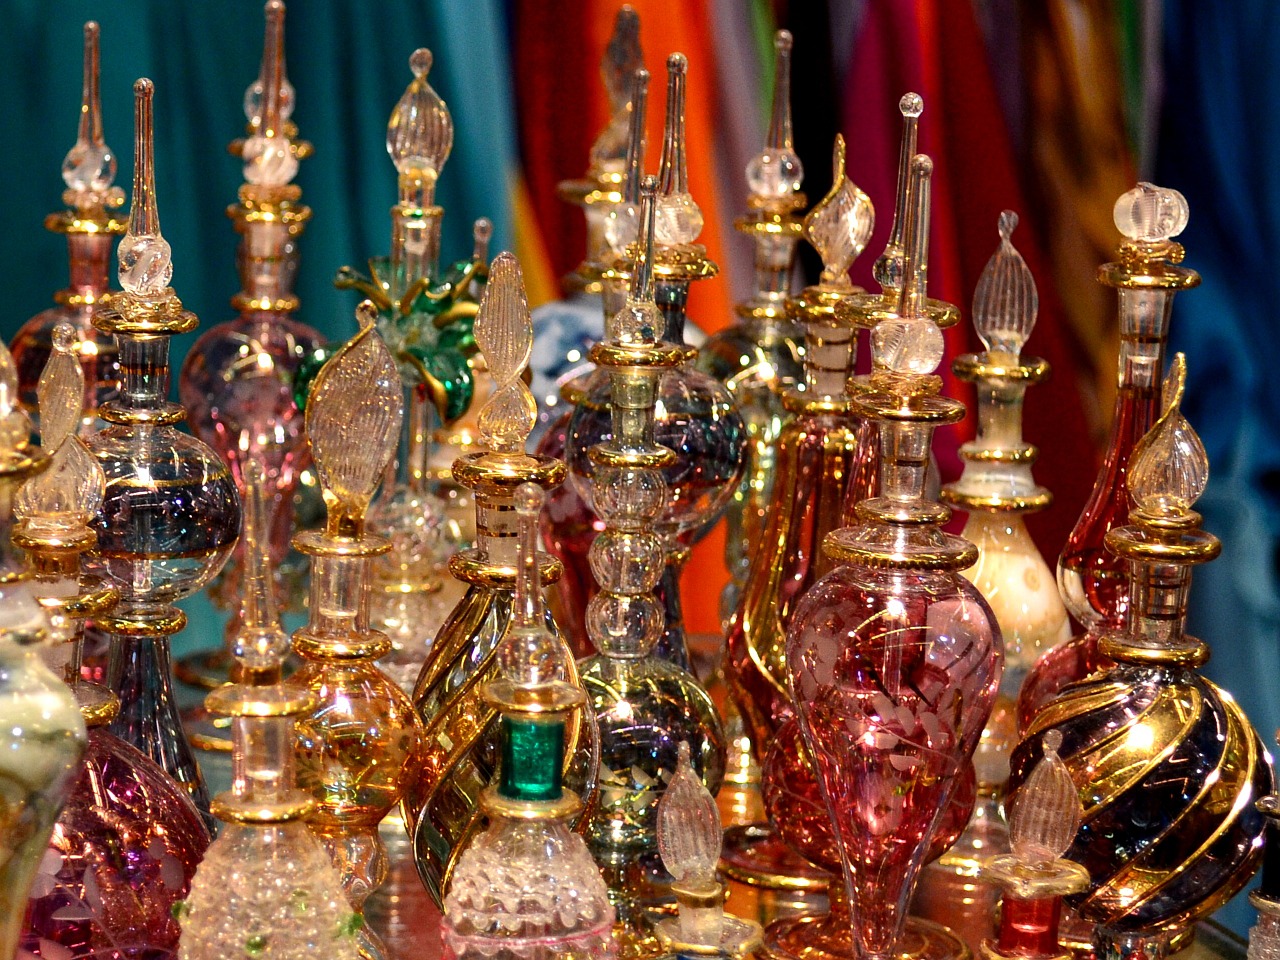 arab perfumes essences bazar free photo